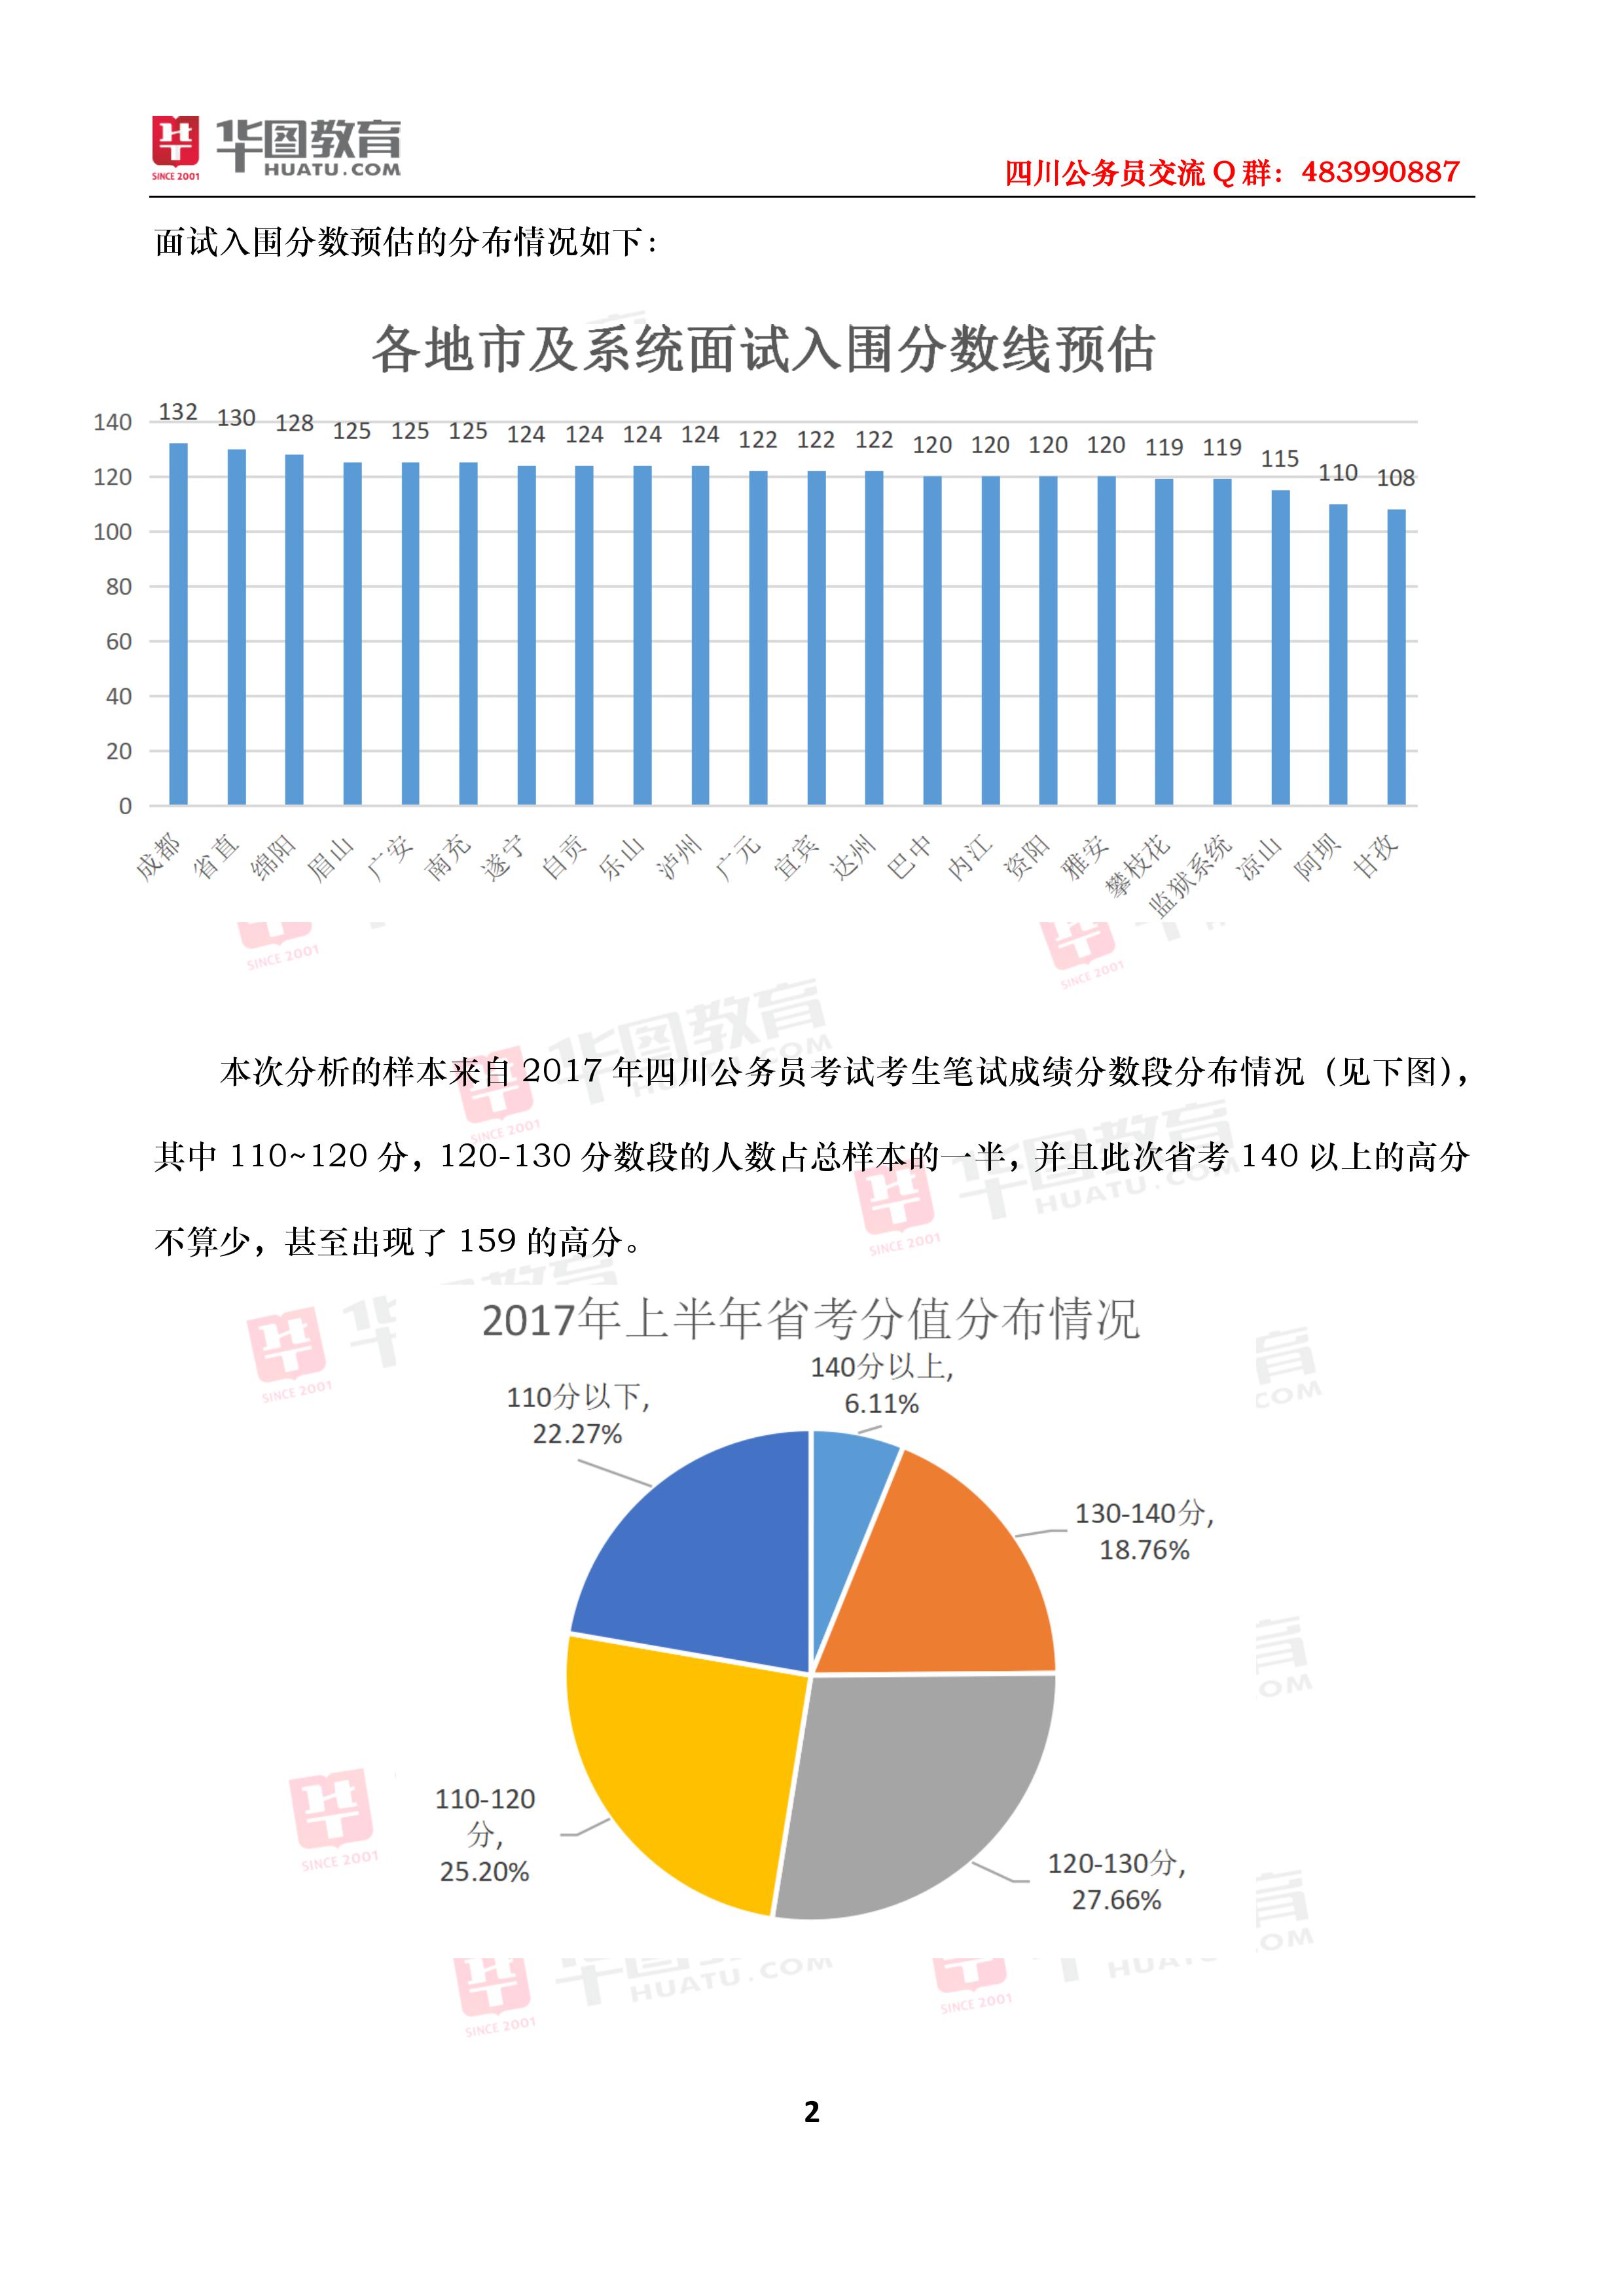 2017年上半年四川省公务员招聘考试笔试分数线